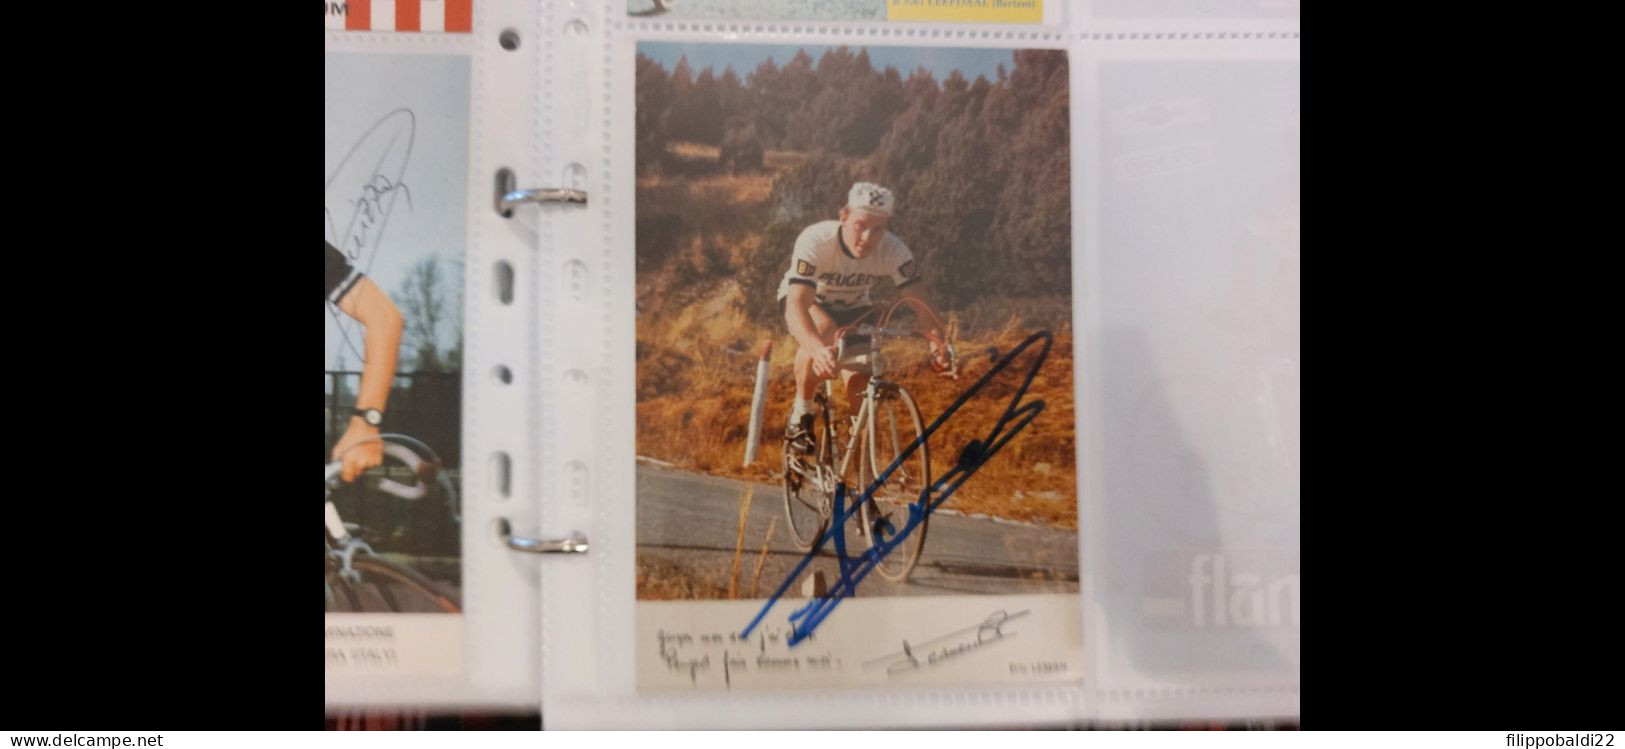 Eric Leman 10x15 Autografo Autograph Signed - Cyclisme